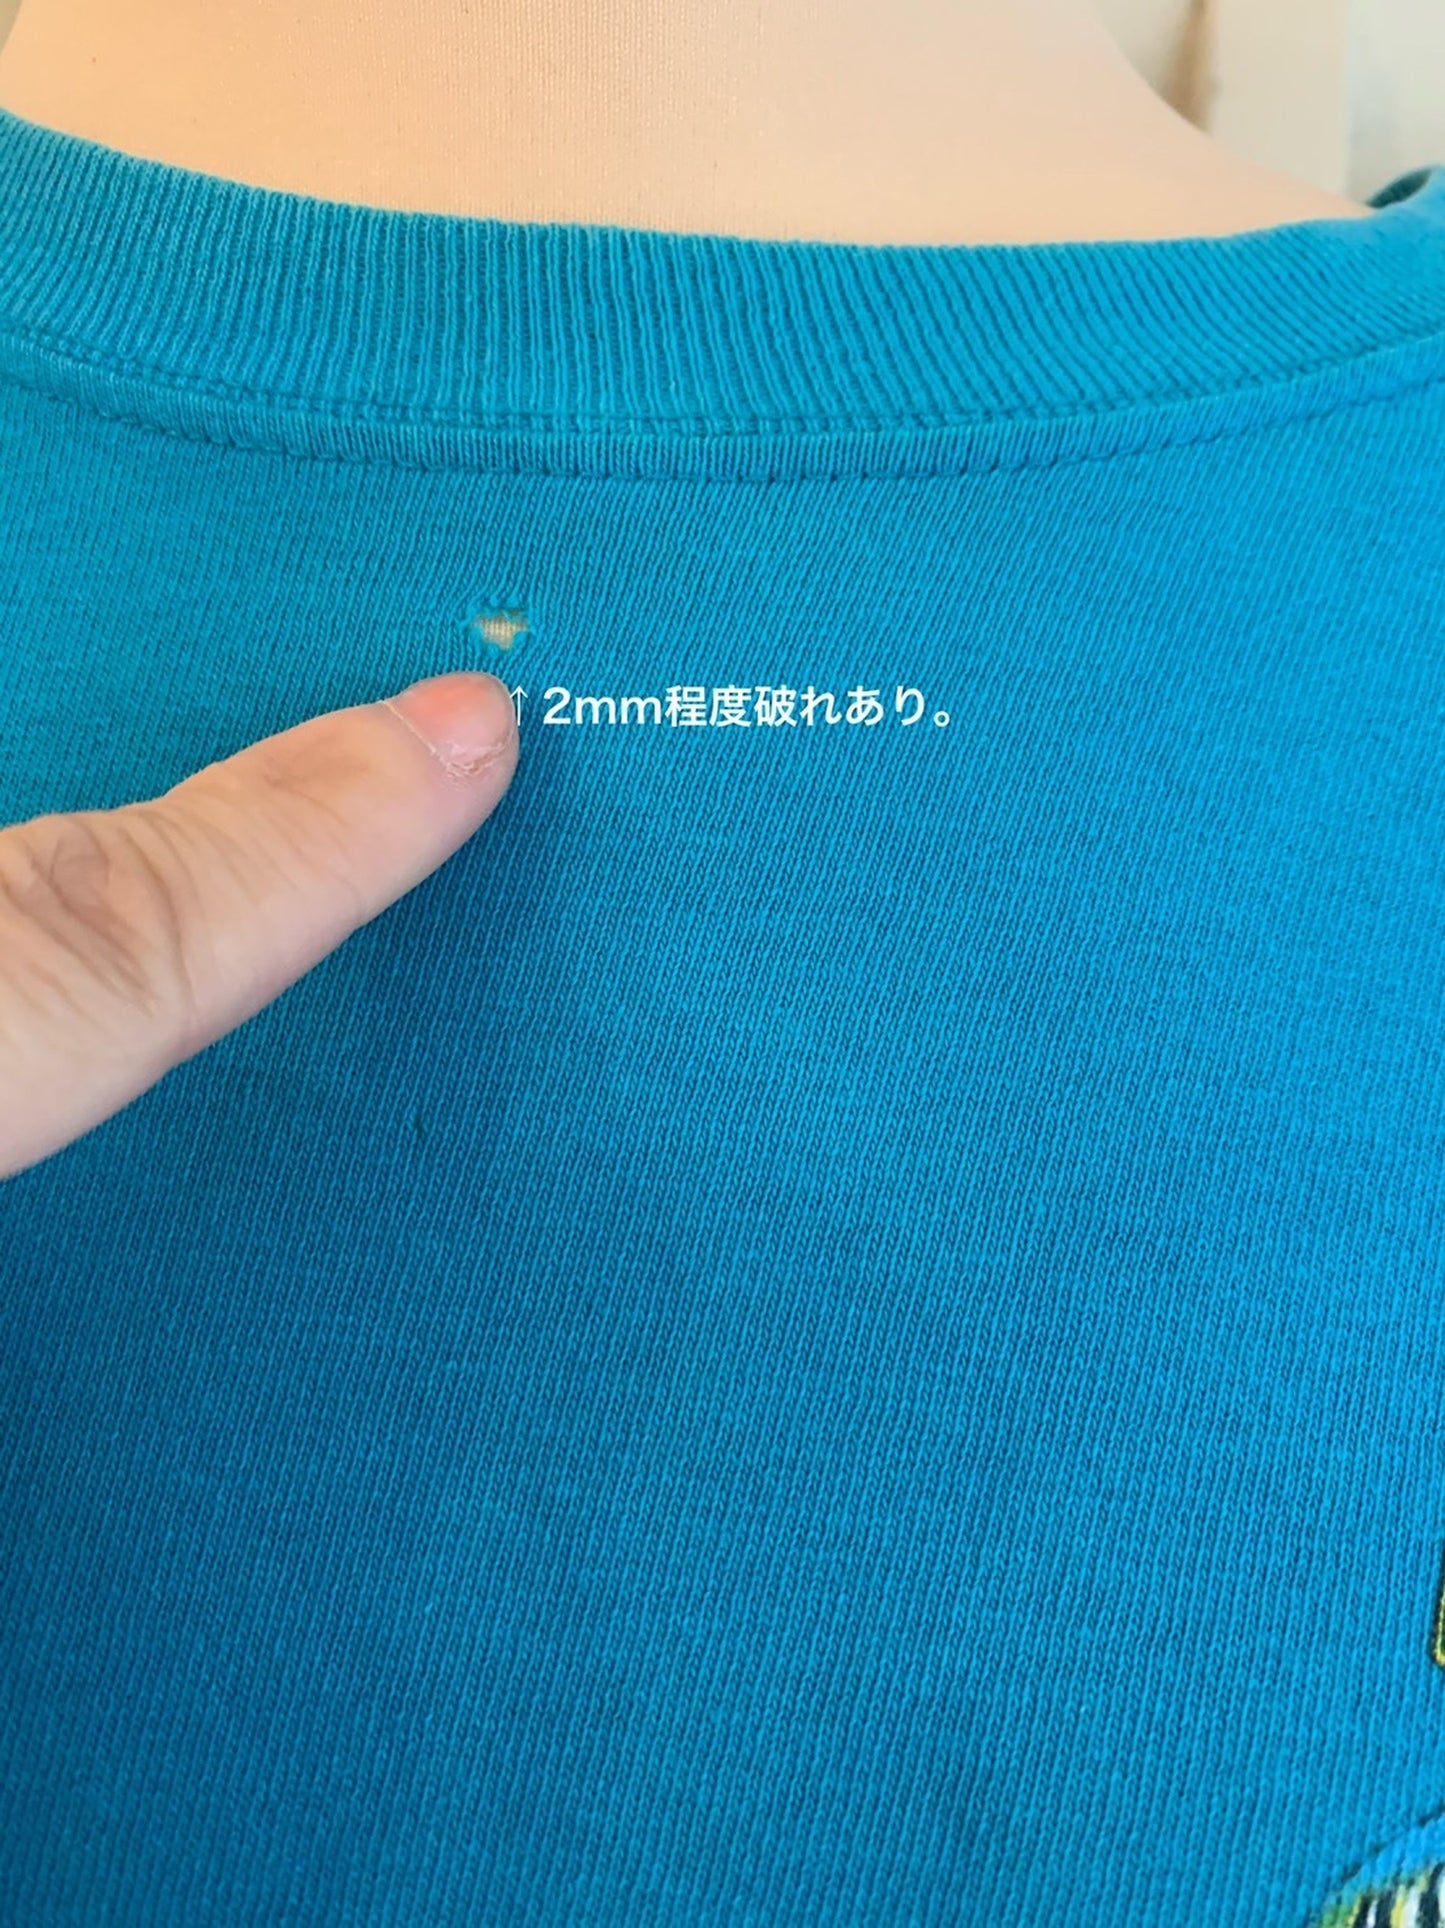 【RONJON SURF SHOP】90's ロンジョン 長袖 Tシャツ USA製 (men's M)